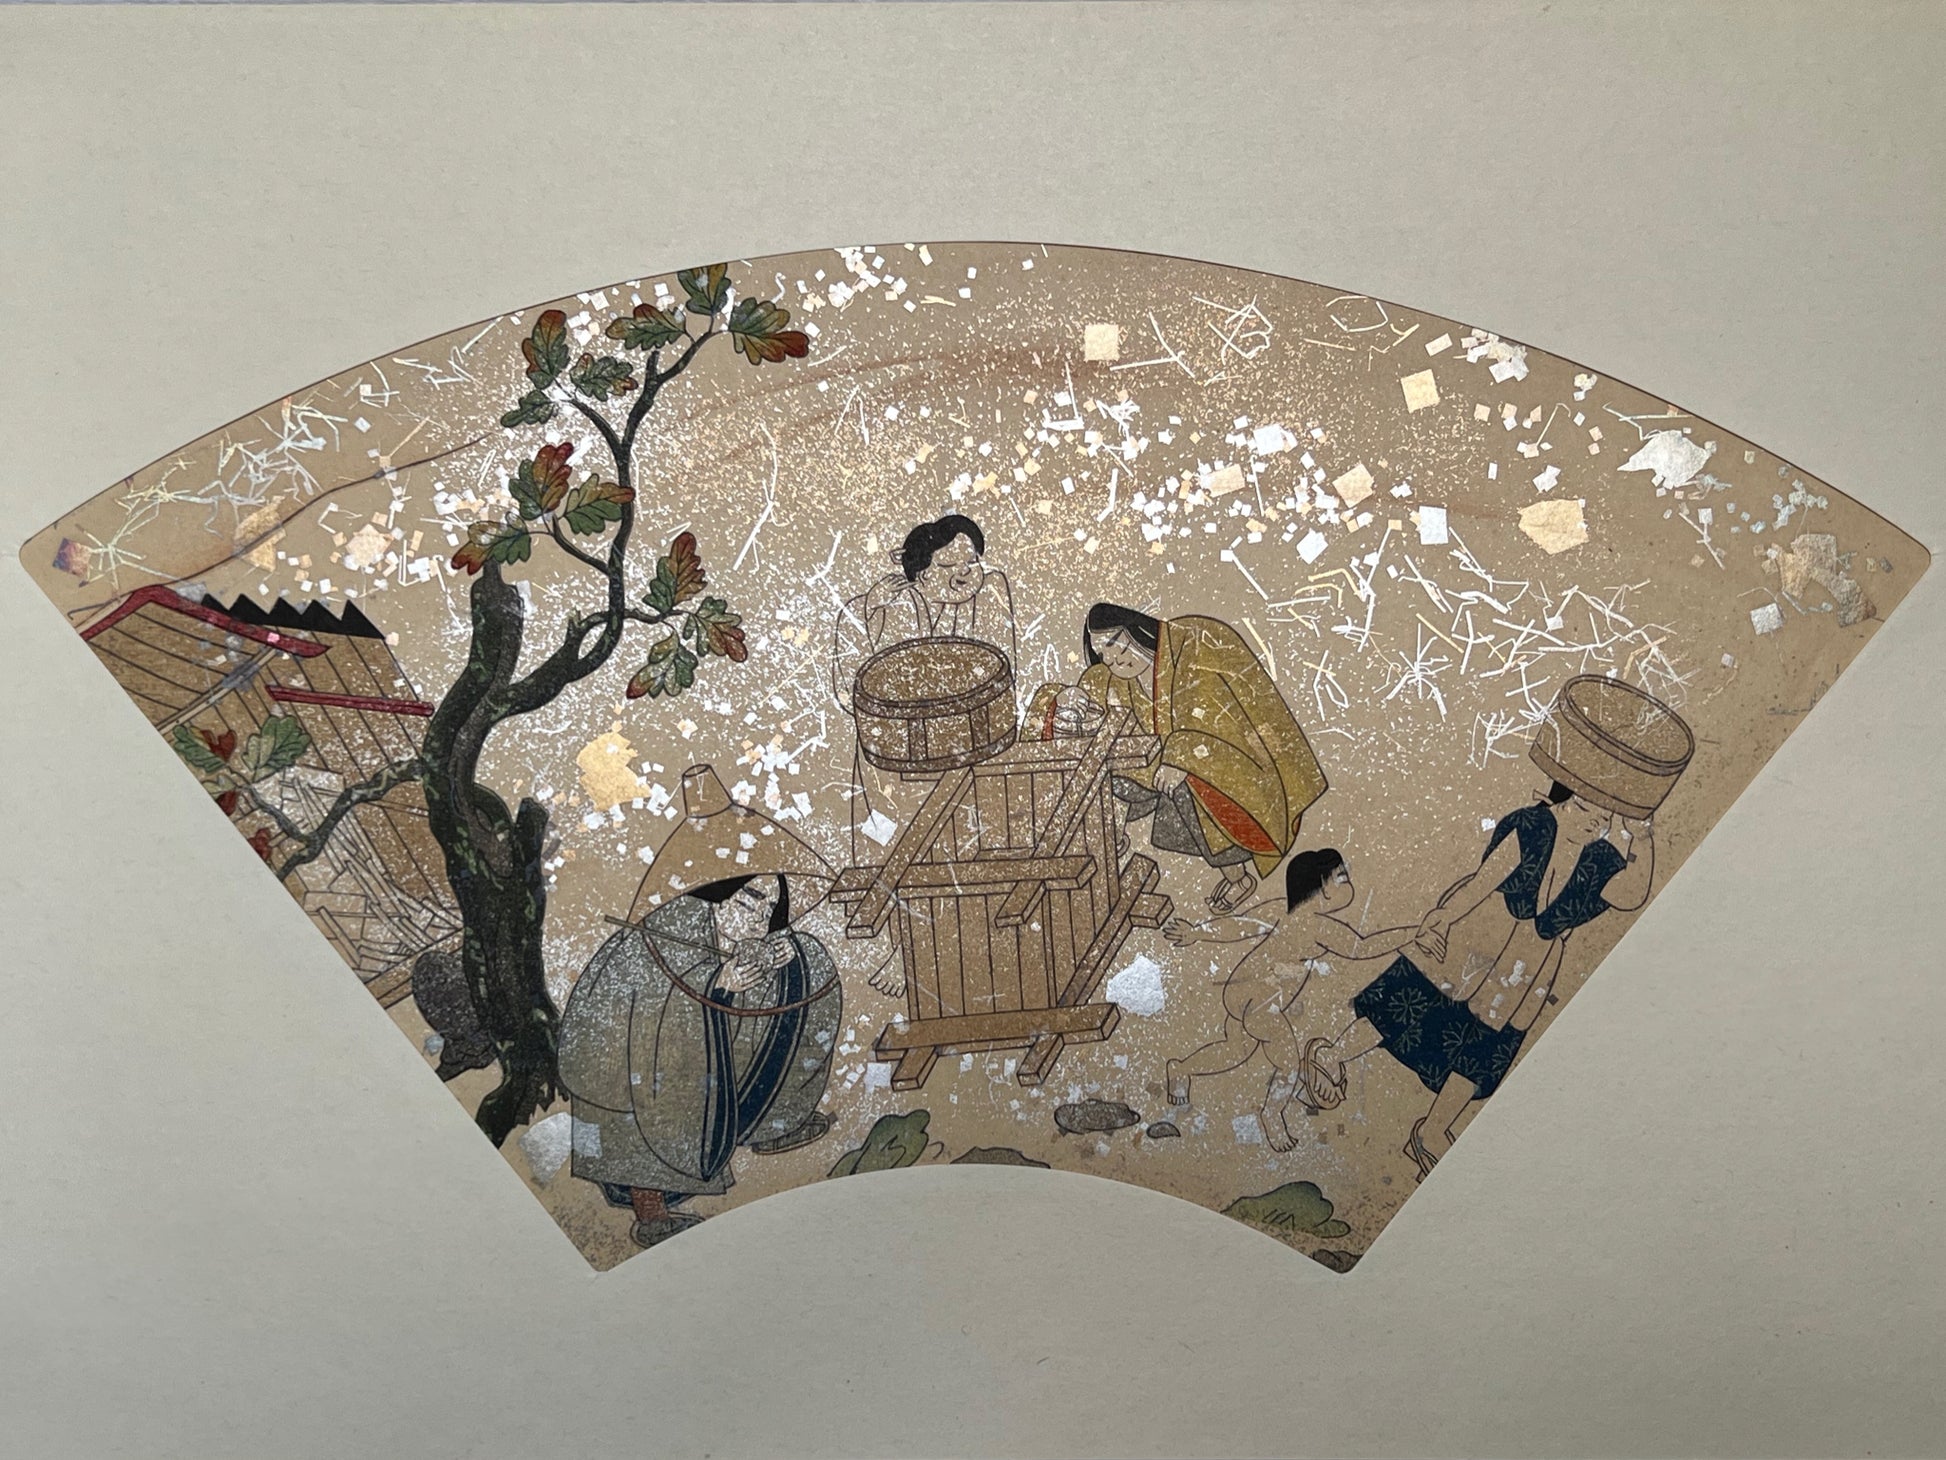 Estampe japonaise en forme d'éventail parsemée de fragments d'or et d'argent, femmes et enfant près d'un puits, sous un chêne, série sutra du lotus, fragments scintillants.